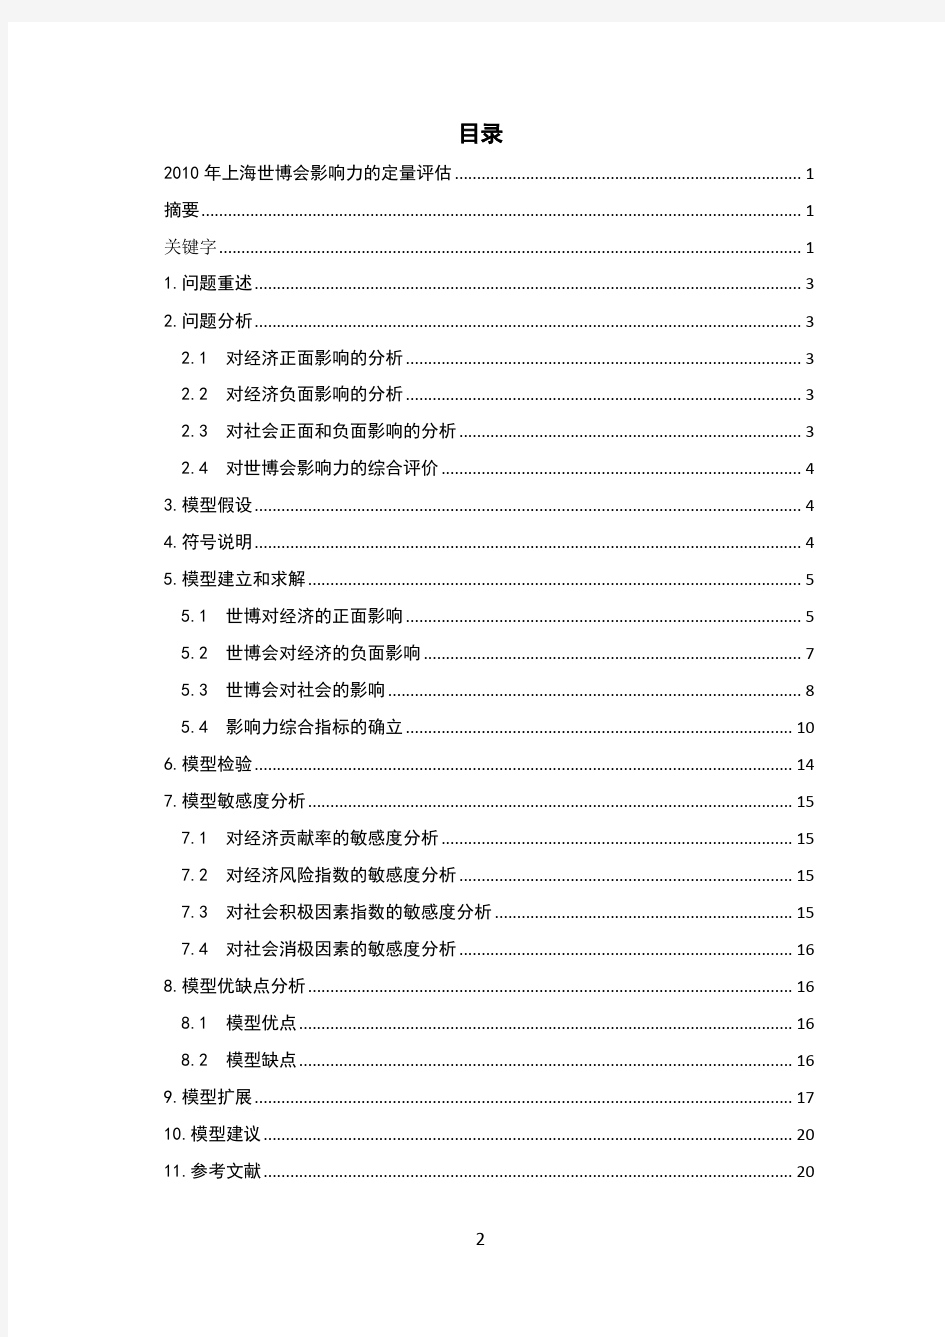 2010年大学生数学建模优秀论文上海世博会影响力的定量评估